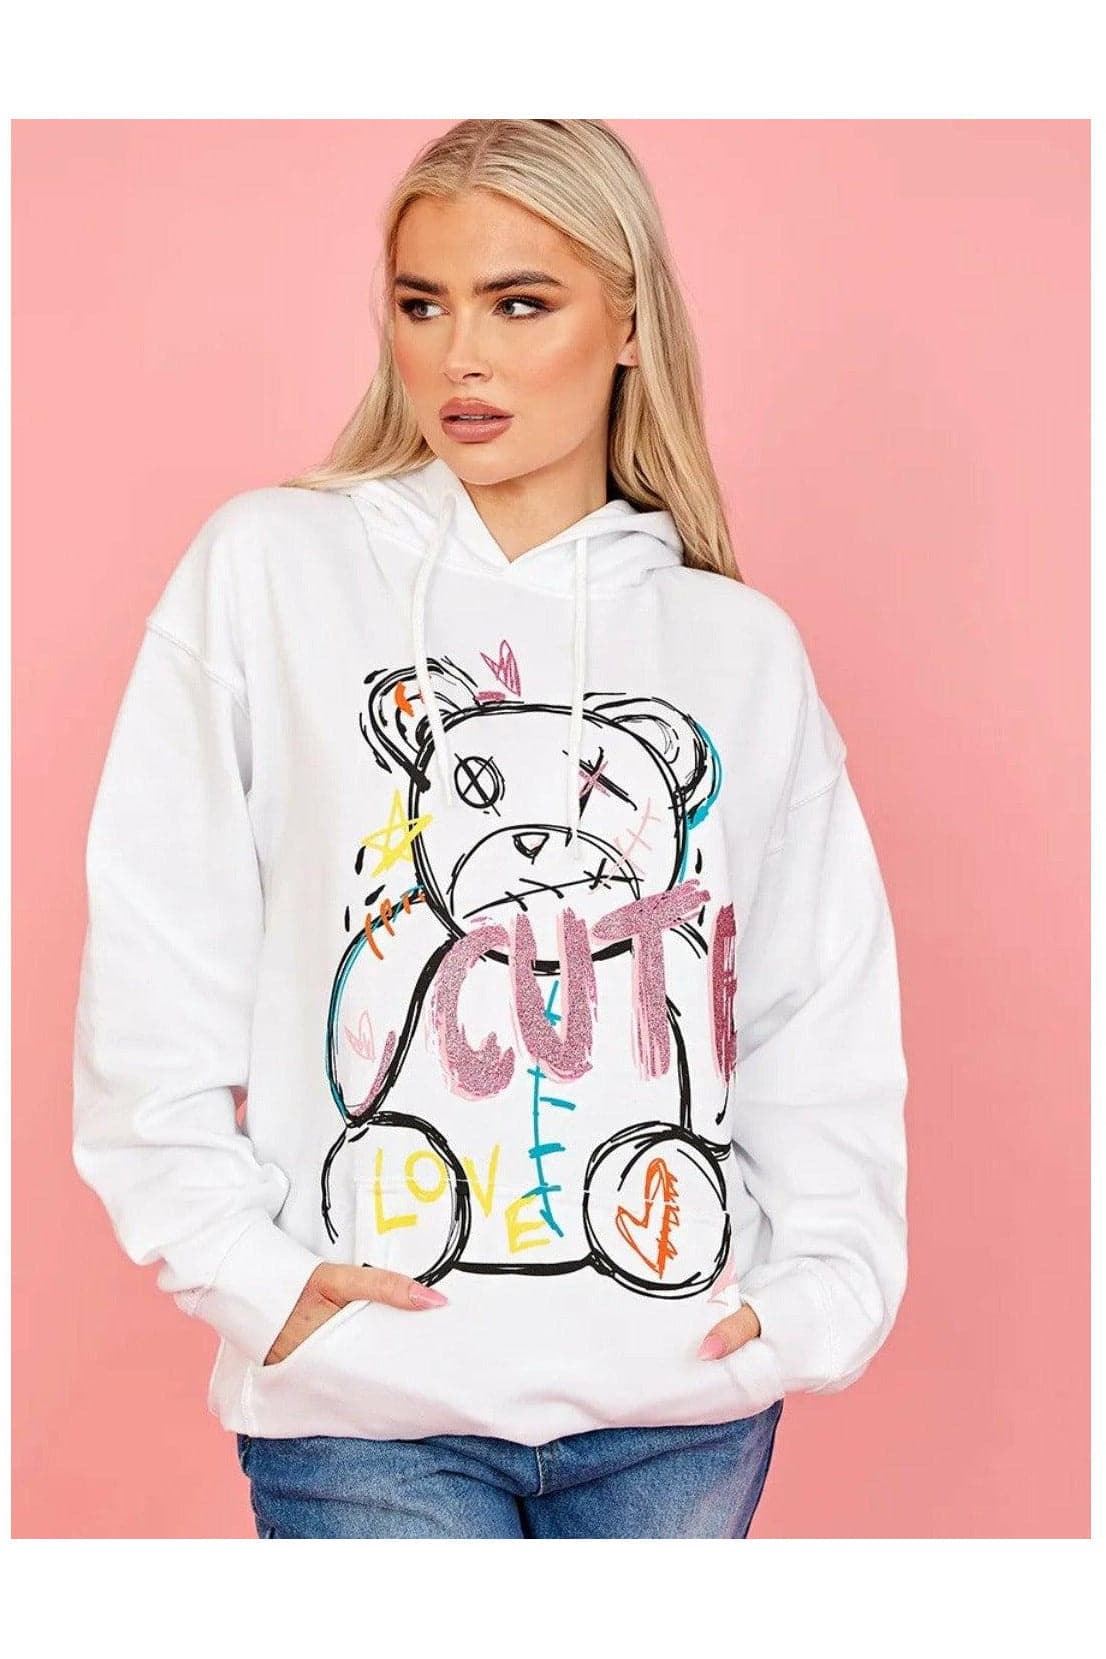 Hoodie Sweatshirt White Cute Teddy Graphics - Premium Hoodie Sweatshirt from justgal - Just £16.99! Shop now at justgal